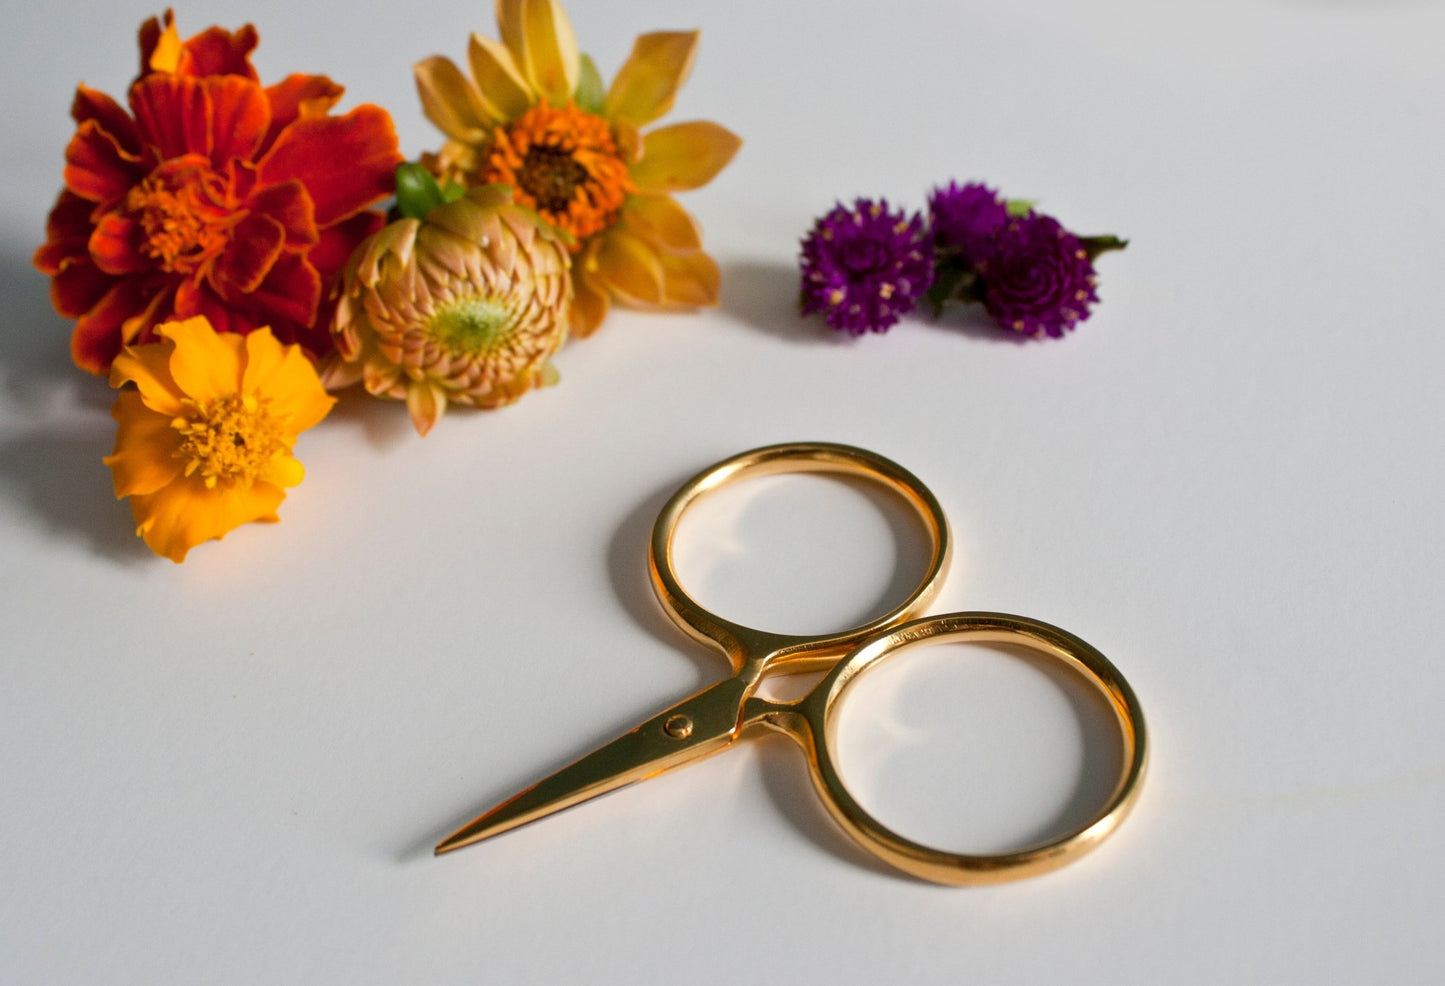 Mini scissors - Mark's Miniatures